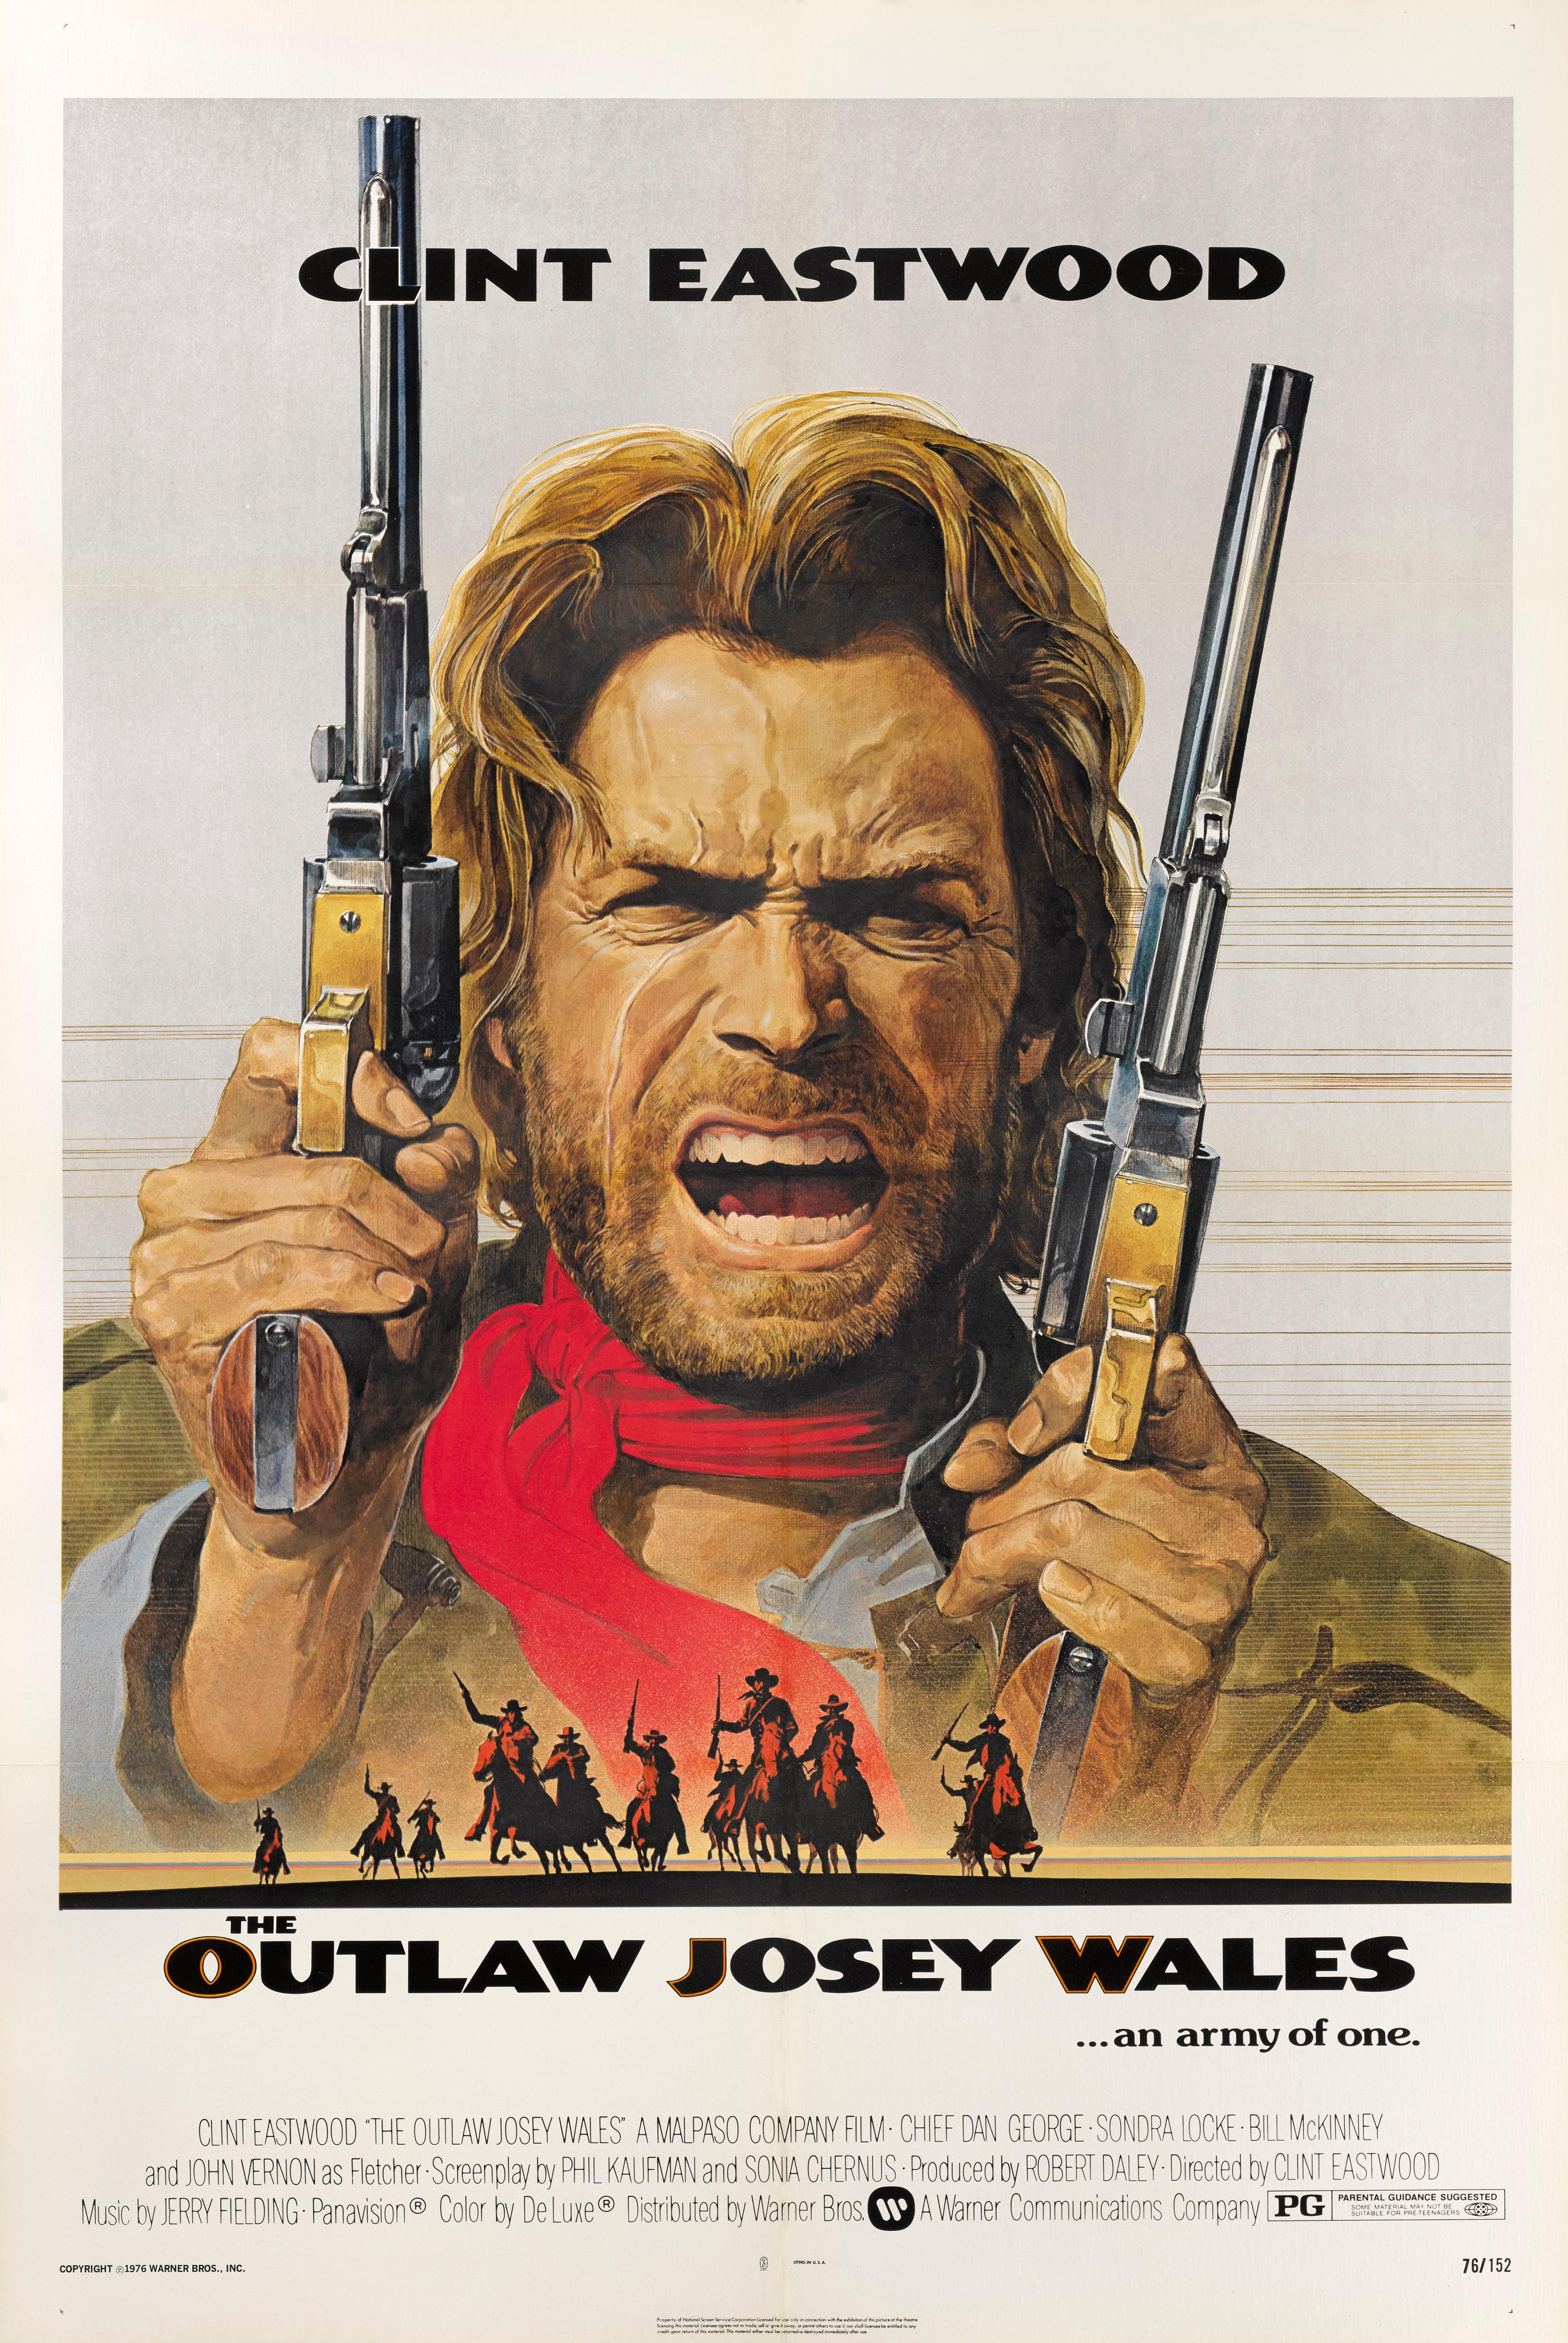 Affiche originale du film Western The Outlaw Josey Wales (1976).
Réalisé et interprété par Clint Eastwood, ce western qui se déroule pendant et après la guerre de Sécession, est l'un des plus grands du genre.
Cette affiche est de conservation dos